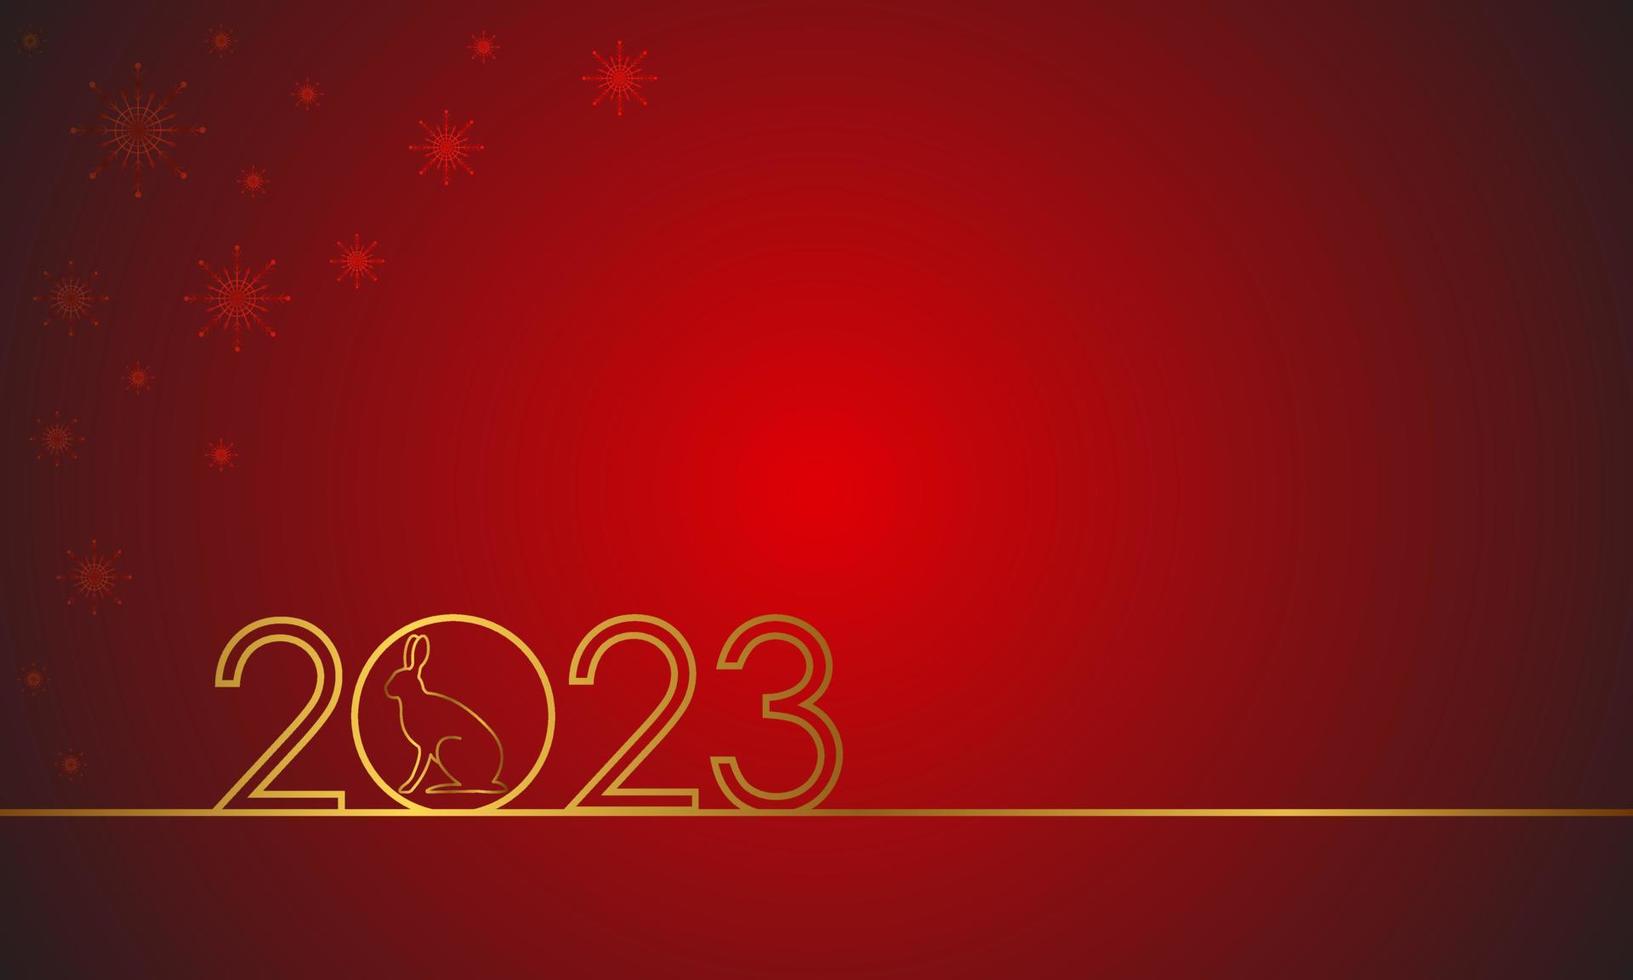 textdesign gott nytt år 2023 med guldsiffror och en hare på röd bakgrund med snöflingor. festlig affisch, gratulationskort eller inbjudningsmall. kaninens år. plats för text. vektor